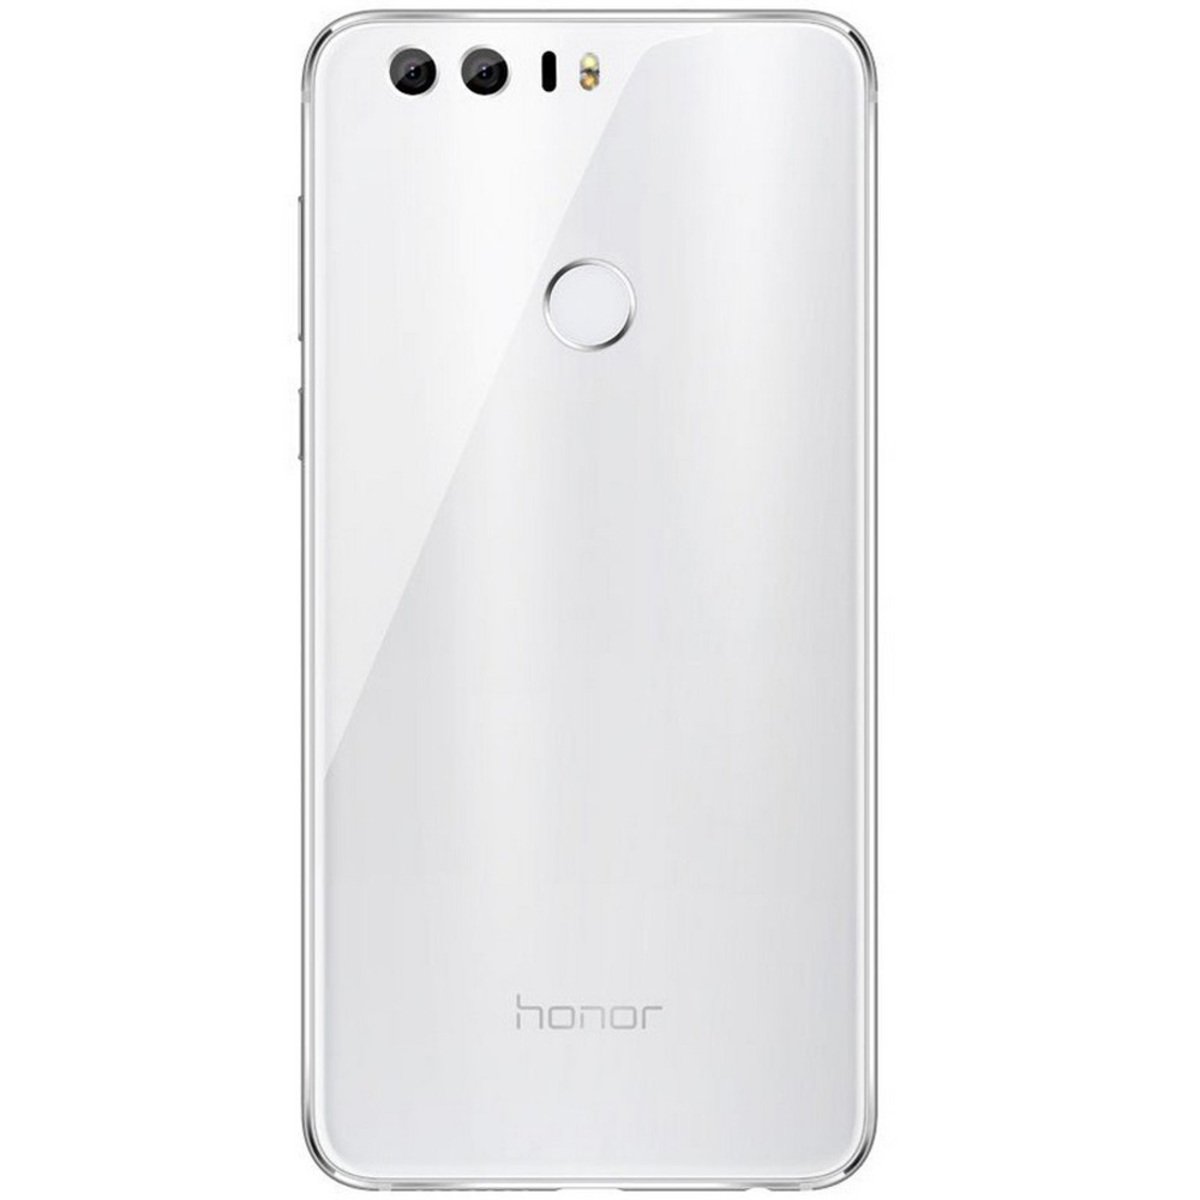 Huawei Honor 8 32GB White